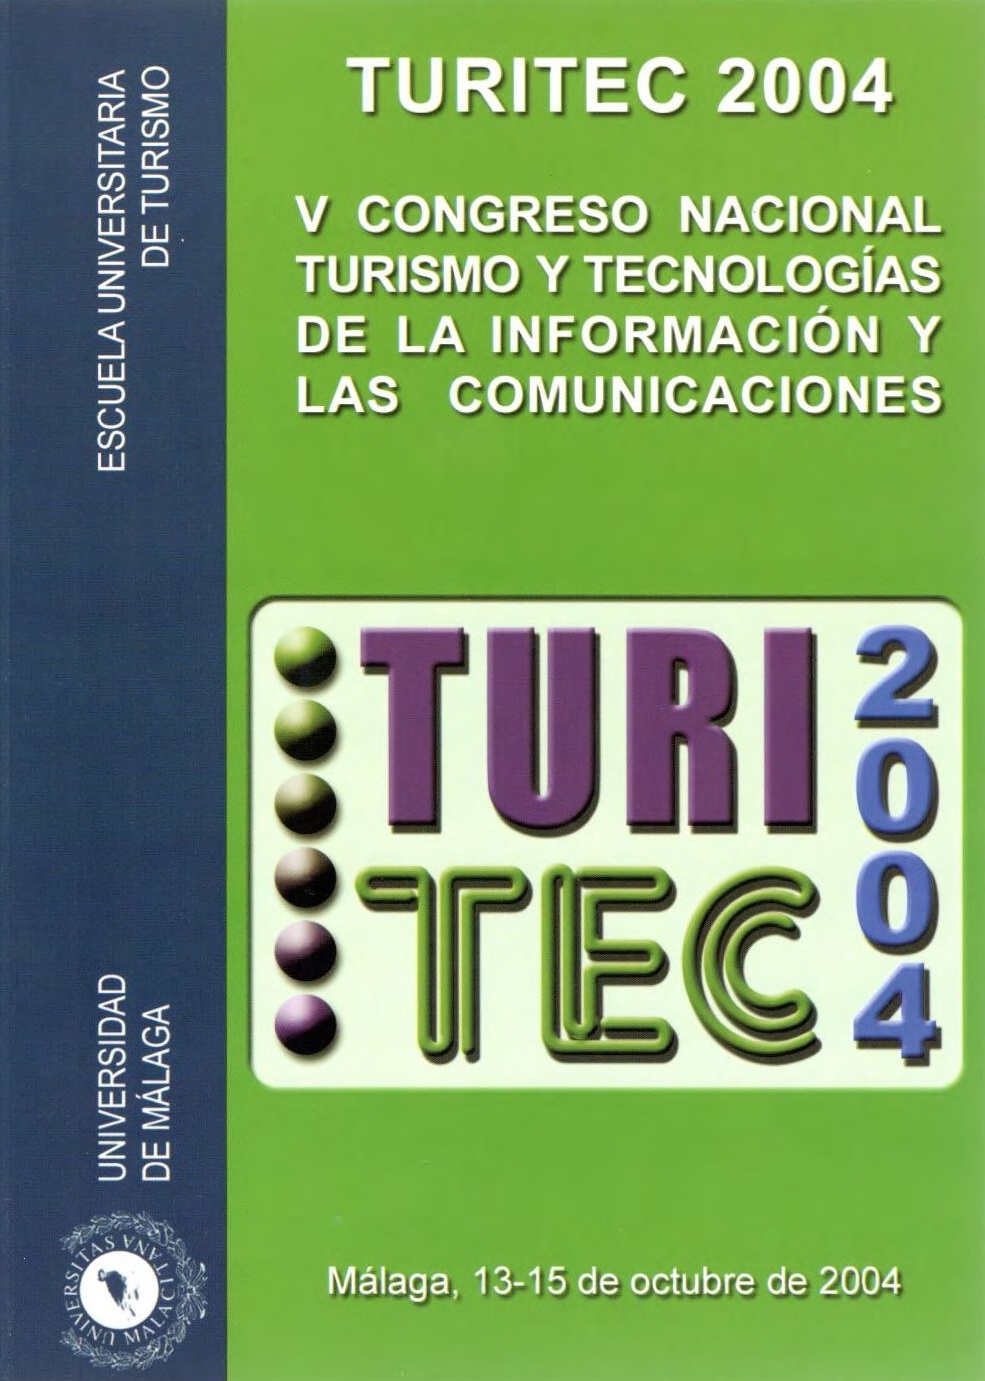 Imagen de portada del libro Turitec 2004